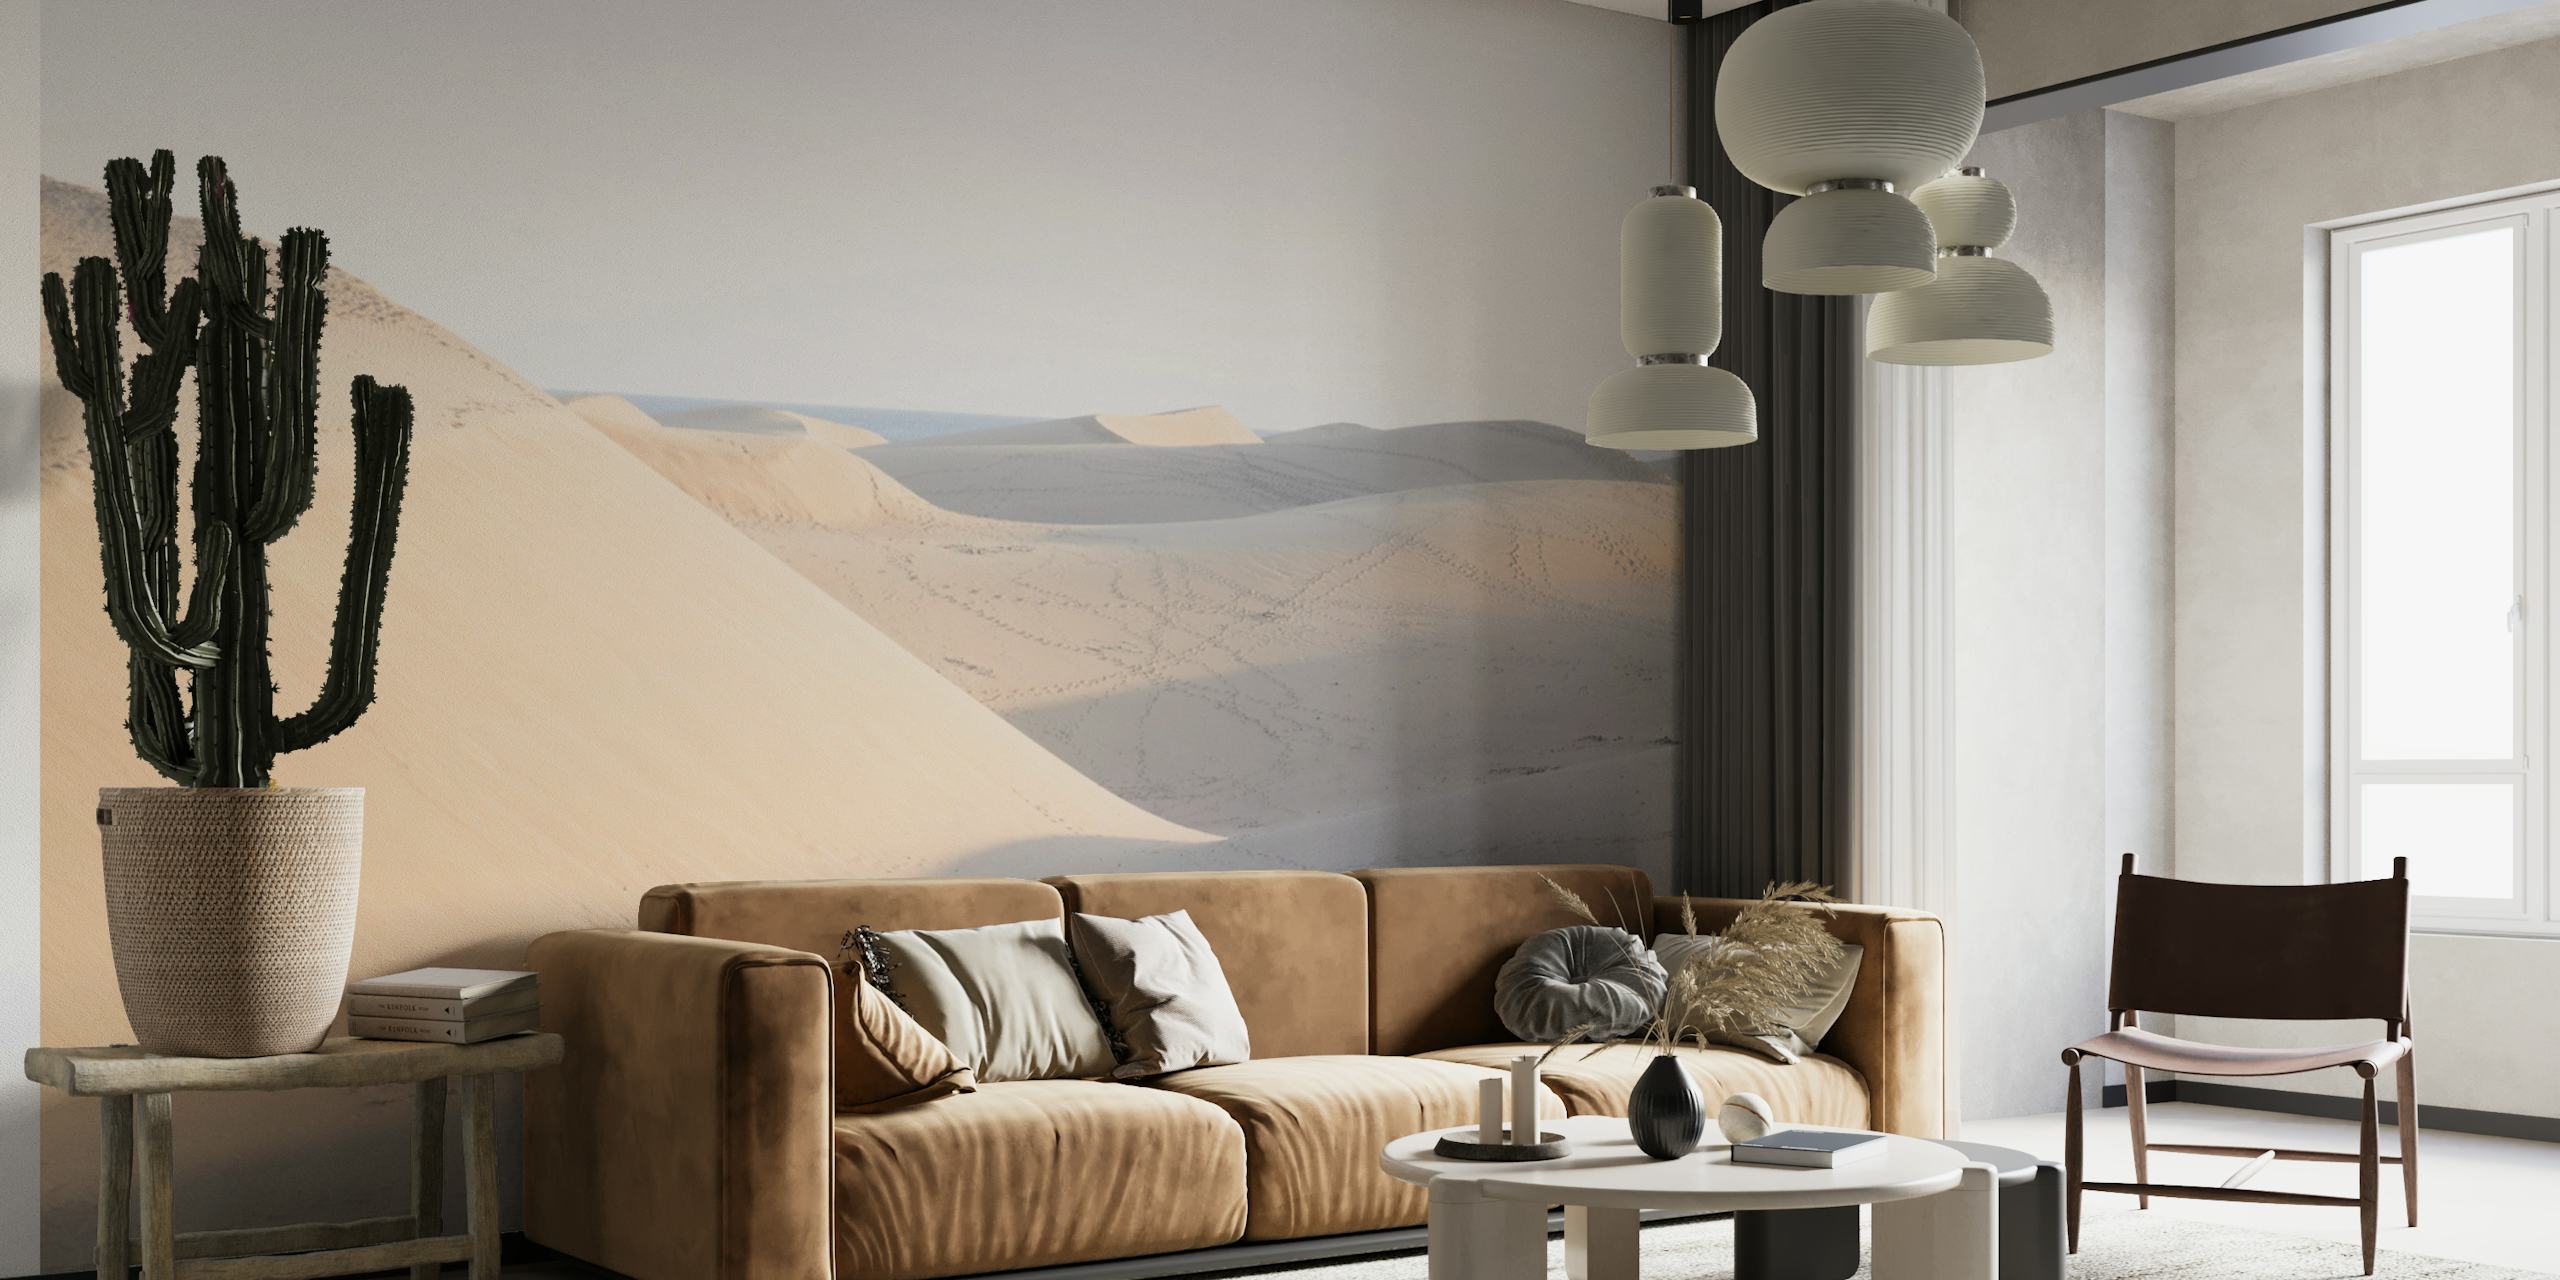 Spokojna fototapeta przedstawiająca pustynną scenę z miękkimi wydmami i subtelnym cieniowaniem